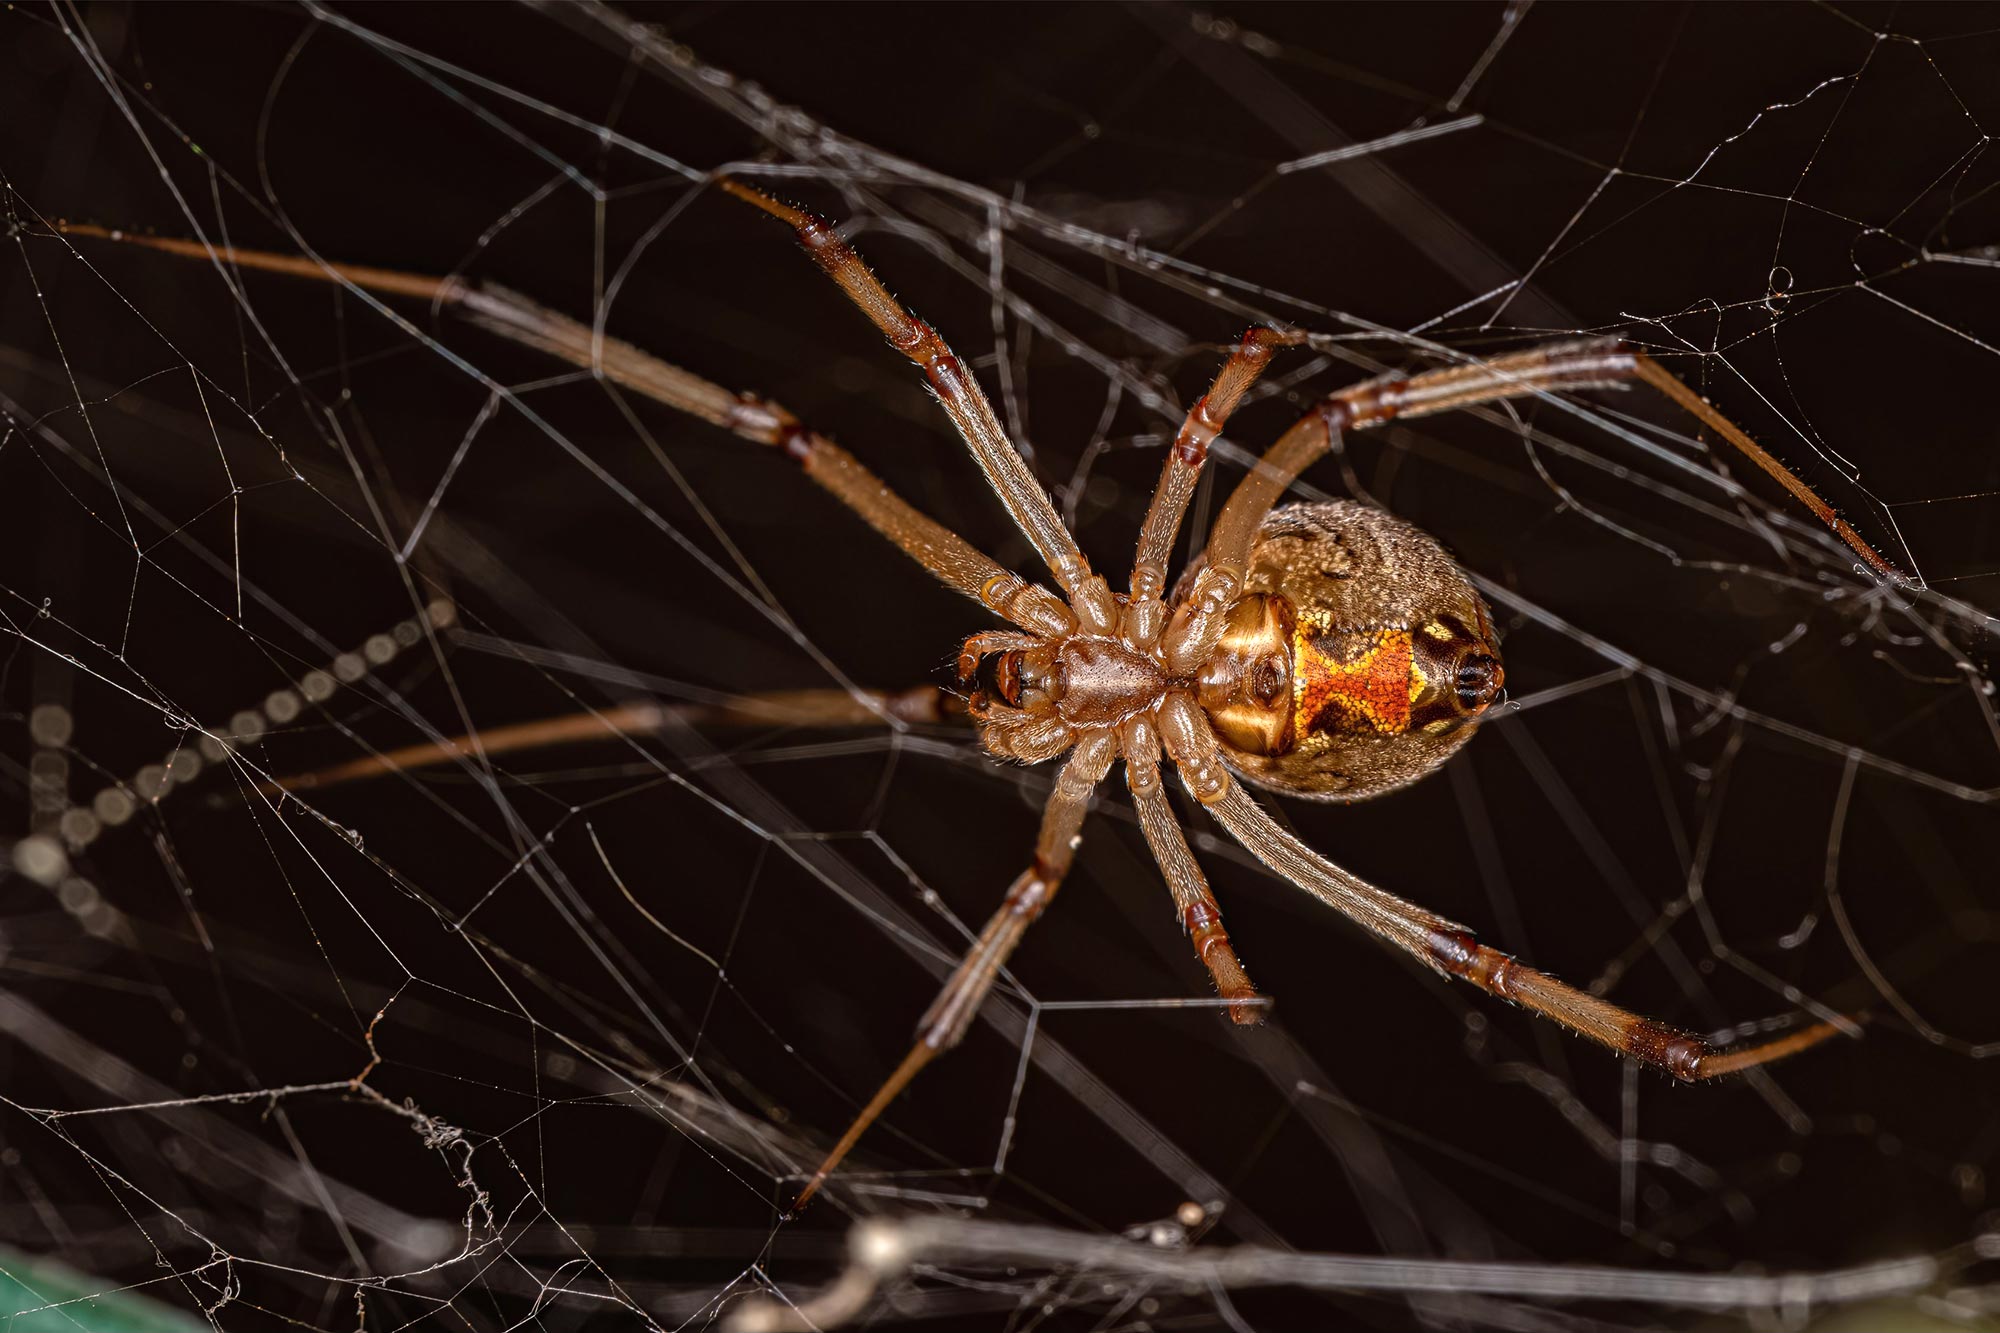 Black Widow Spider Identification & Behavior